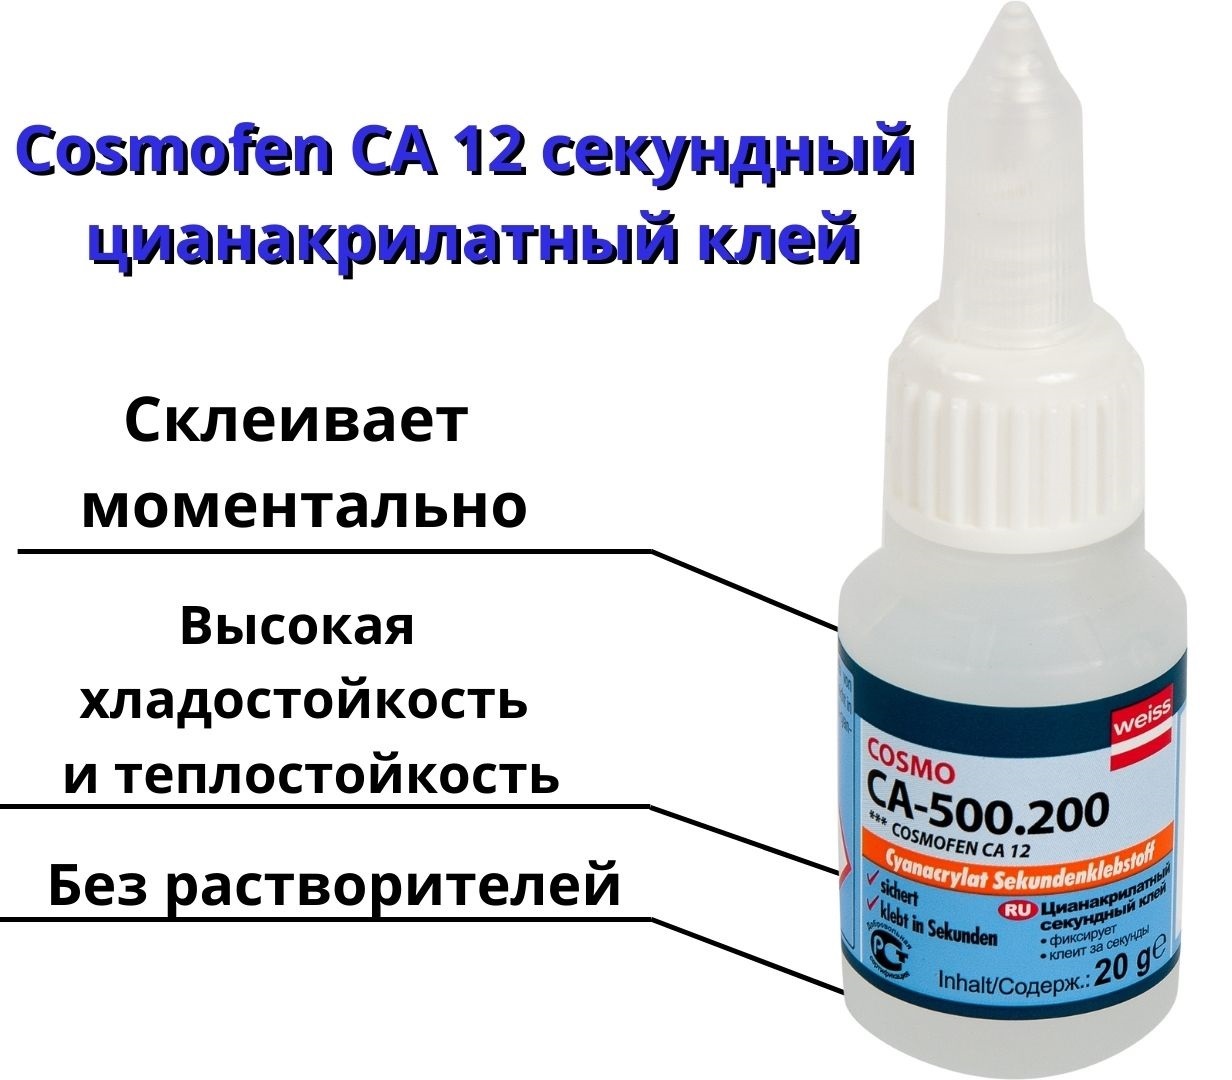 Клей cosmofen ca 12: инструкция по применению космофена и отзывы потребителей